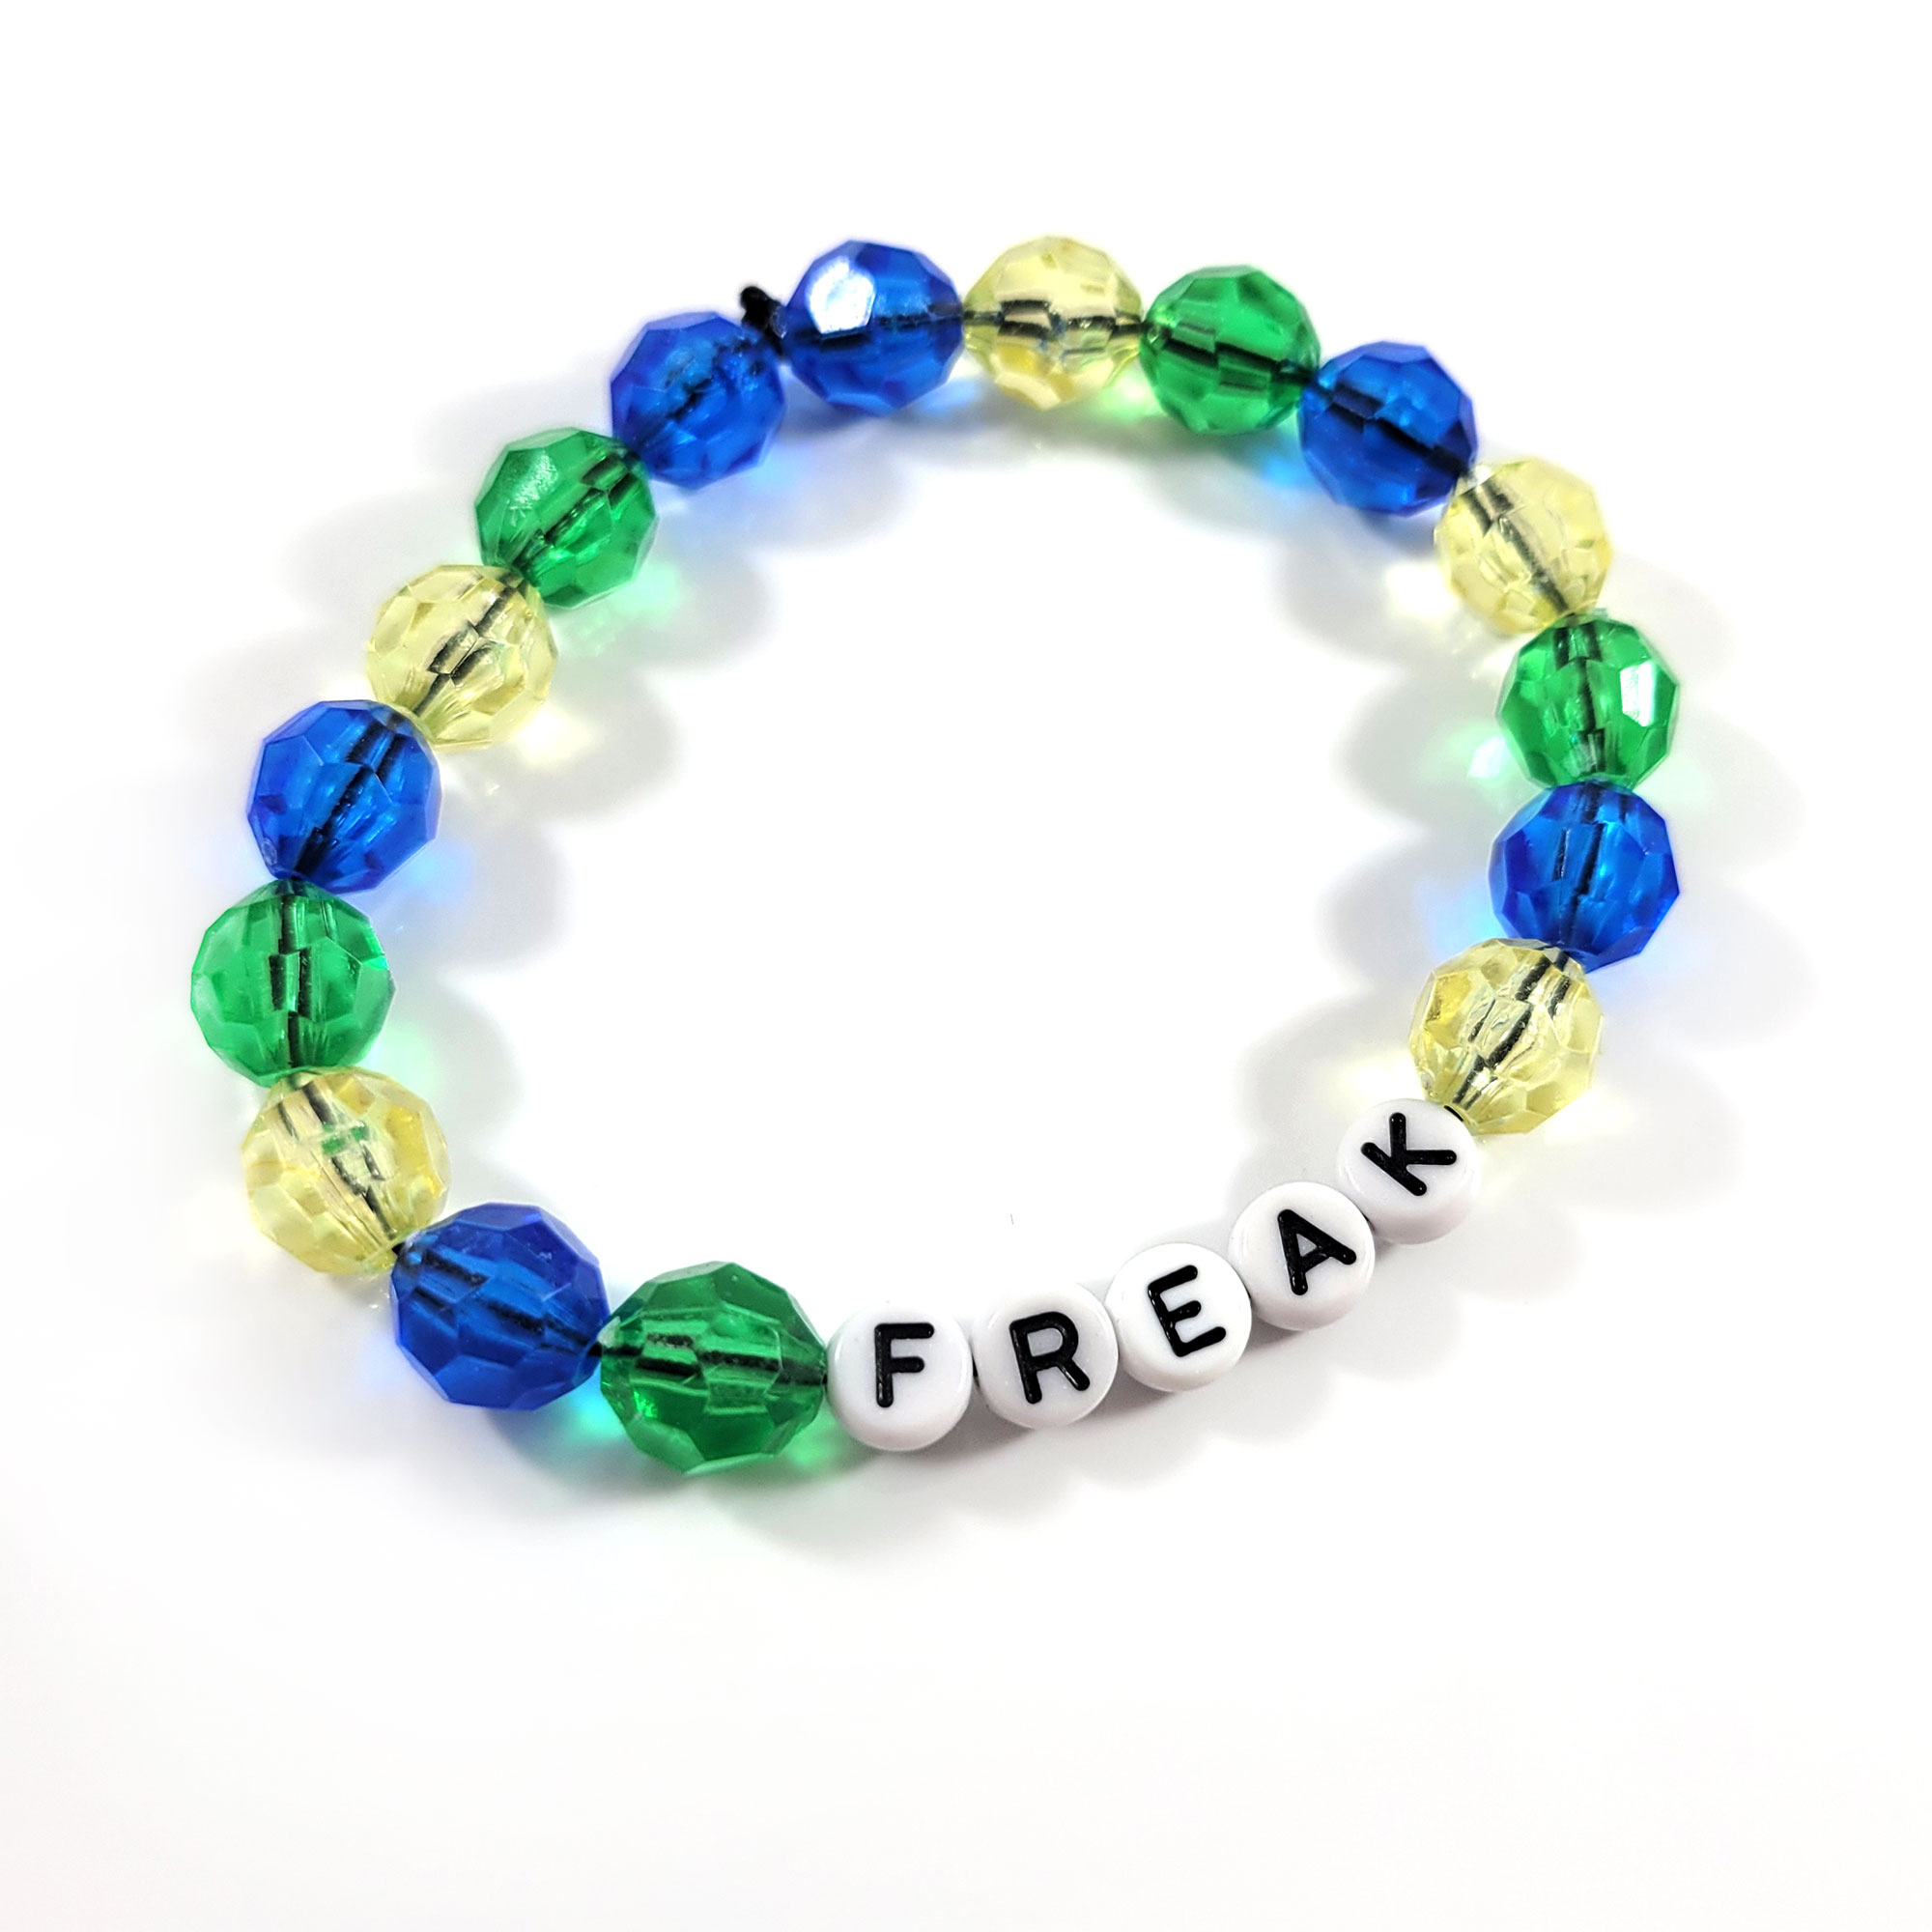 Freak Bead Bracelet by Wilde Designs